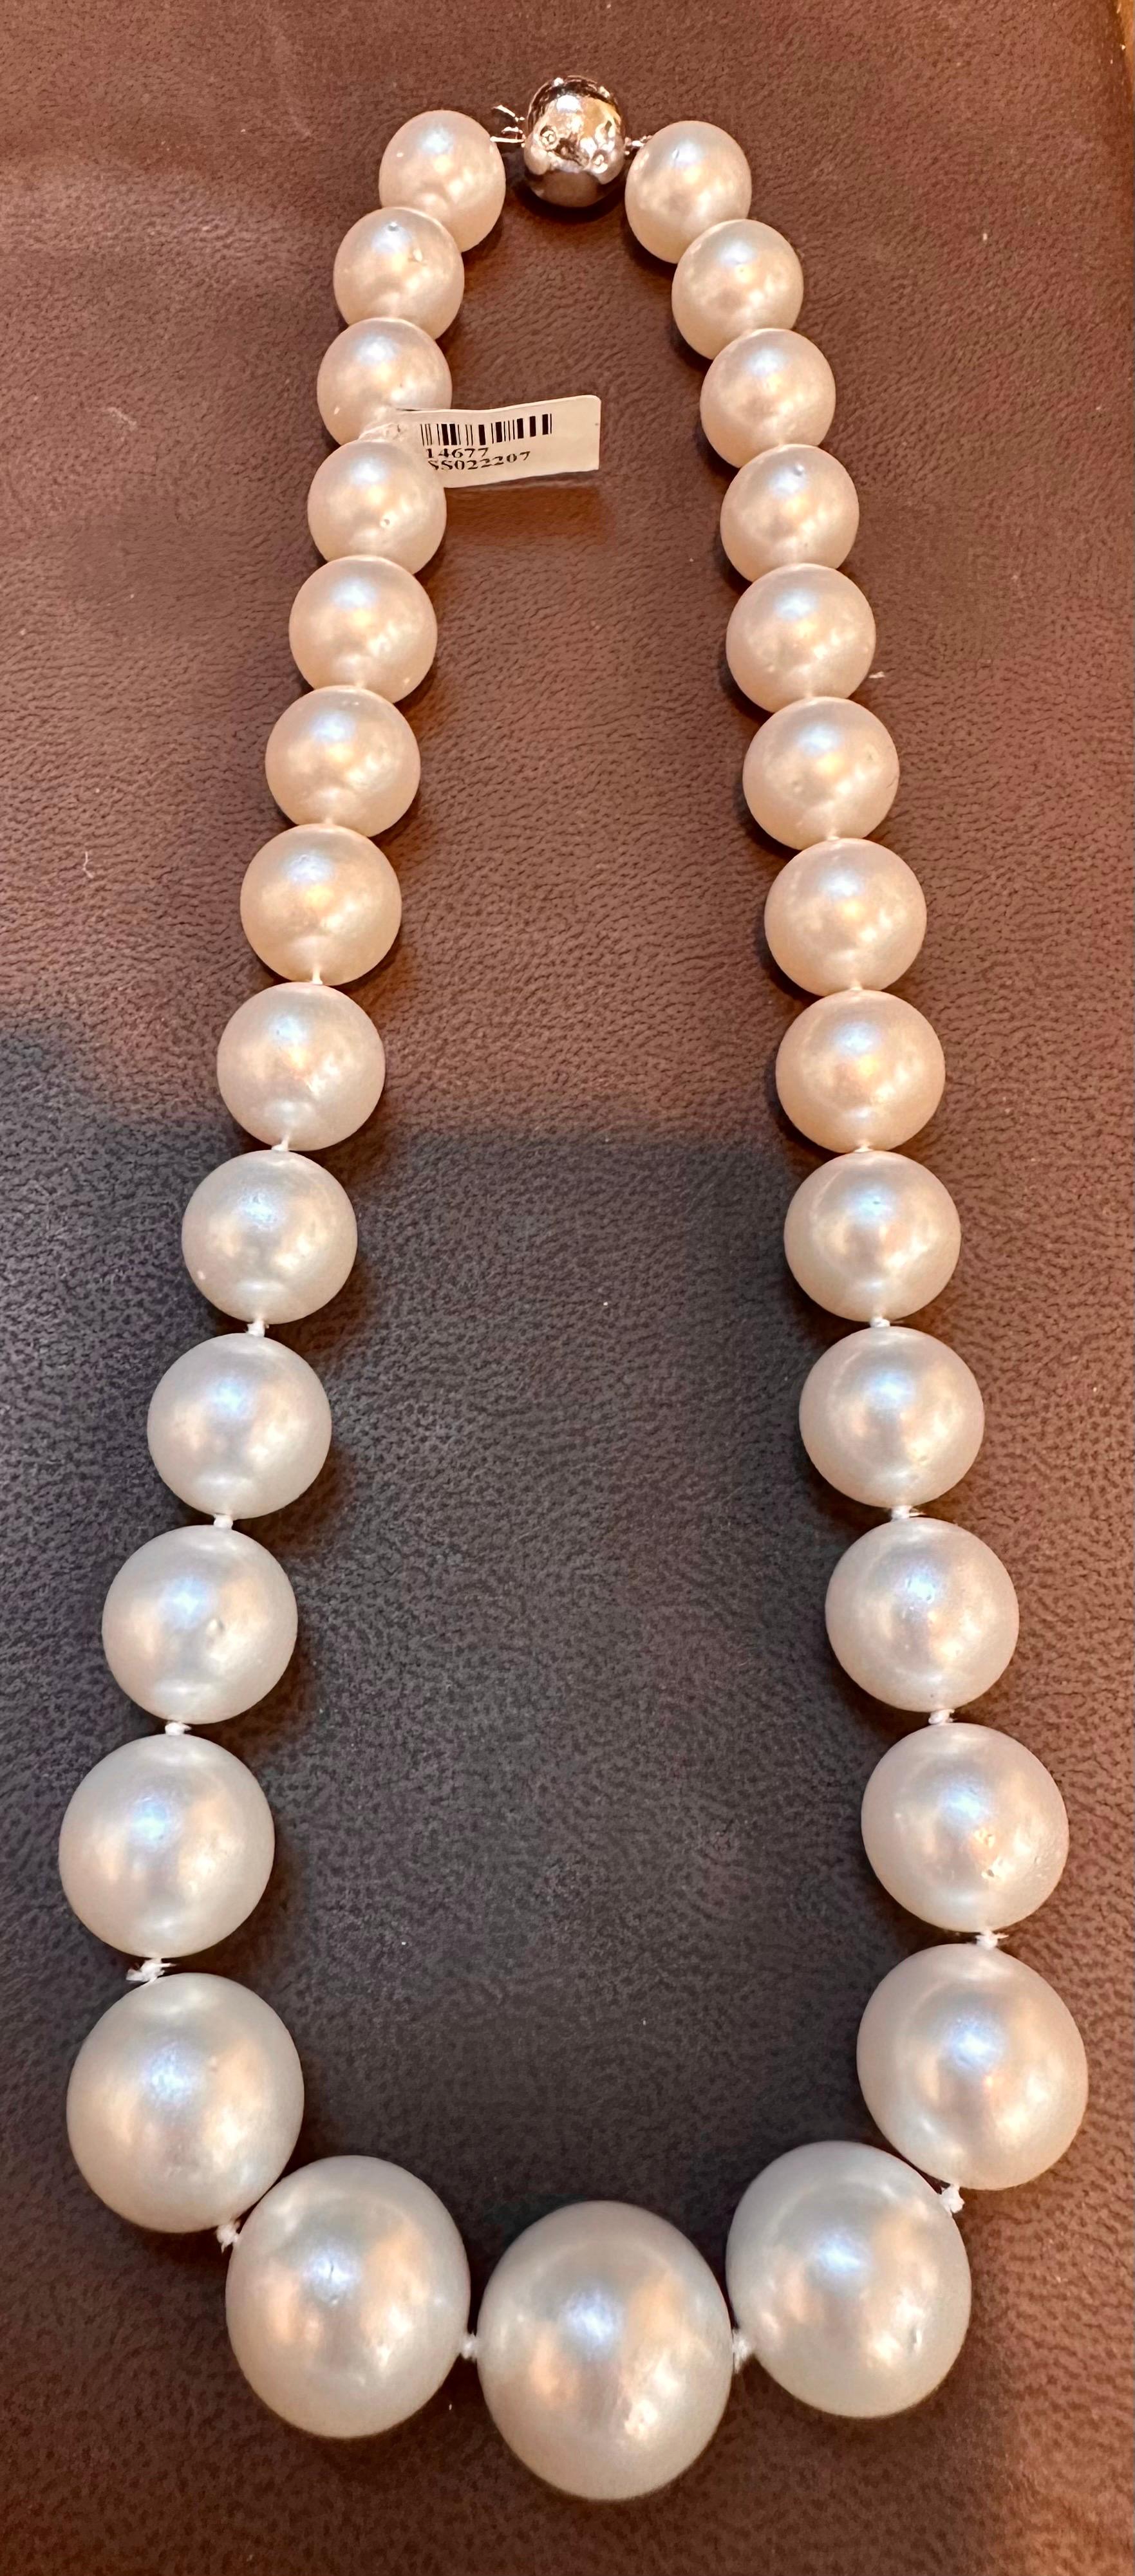  Wir stellen Ihnen unsere exquisite 13-16,5 mm weiße runde Südseeperlenkette in AAA-Qualität vor. Dieses atemberaubende Stück besteht aus 29 makellosen Perlen mit einem Durchmesser zwischen 13 und 16,5 Millimetern. Die Perlen haben eine makellose